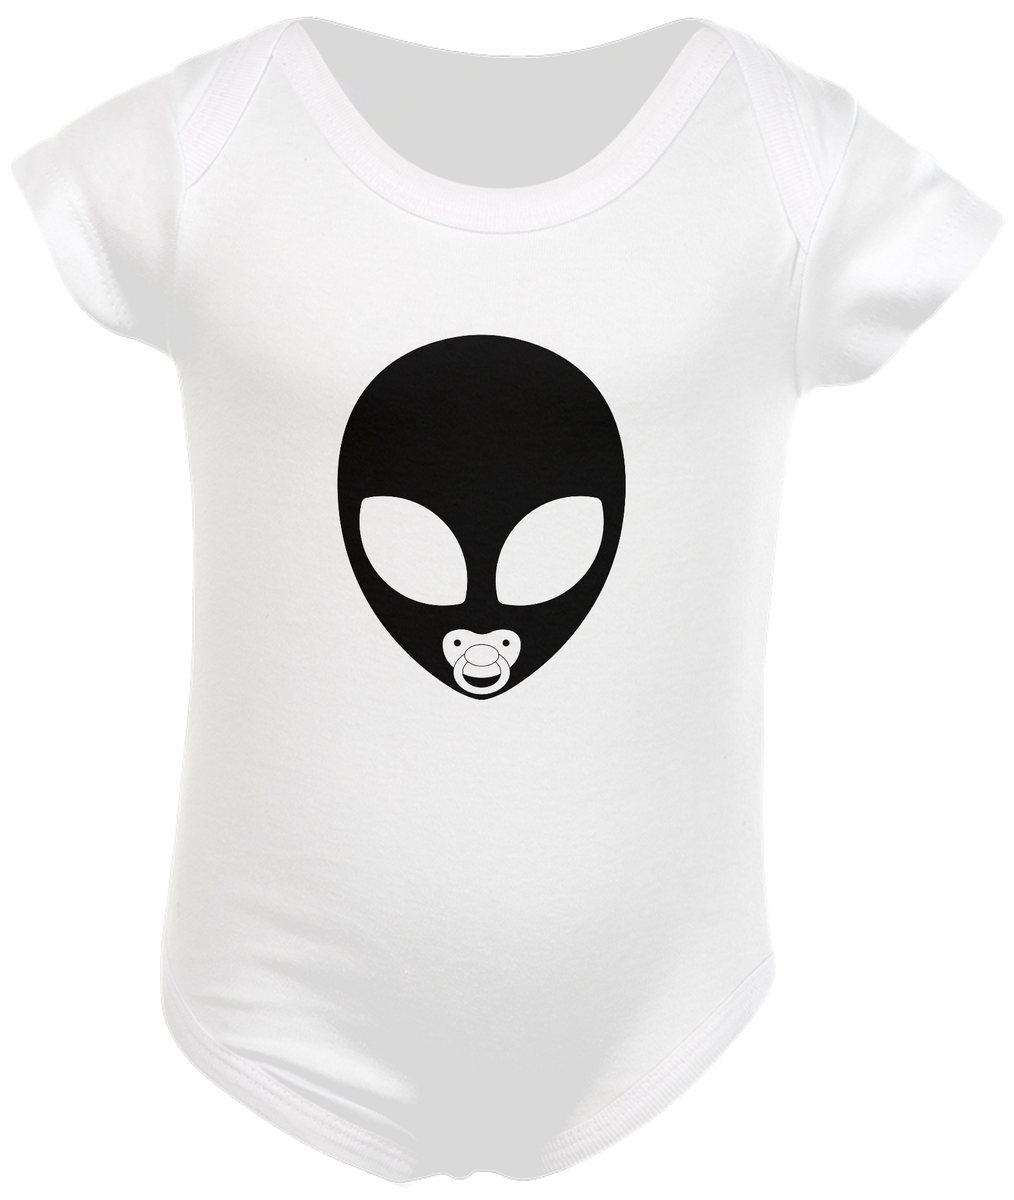 Nome do produto: Alien Baby - Body Infantil [Branco]